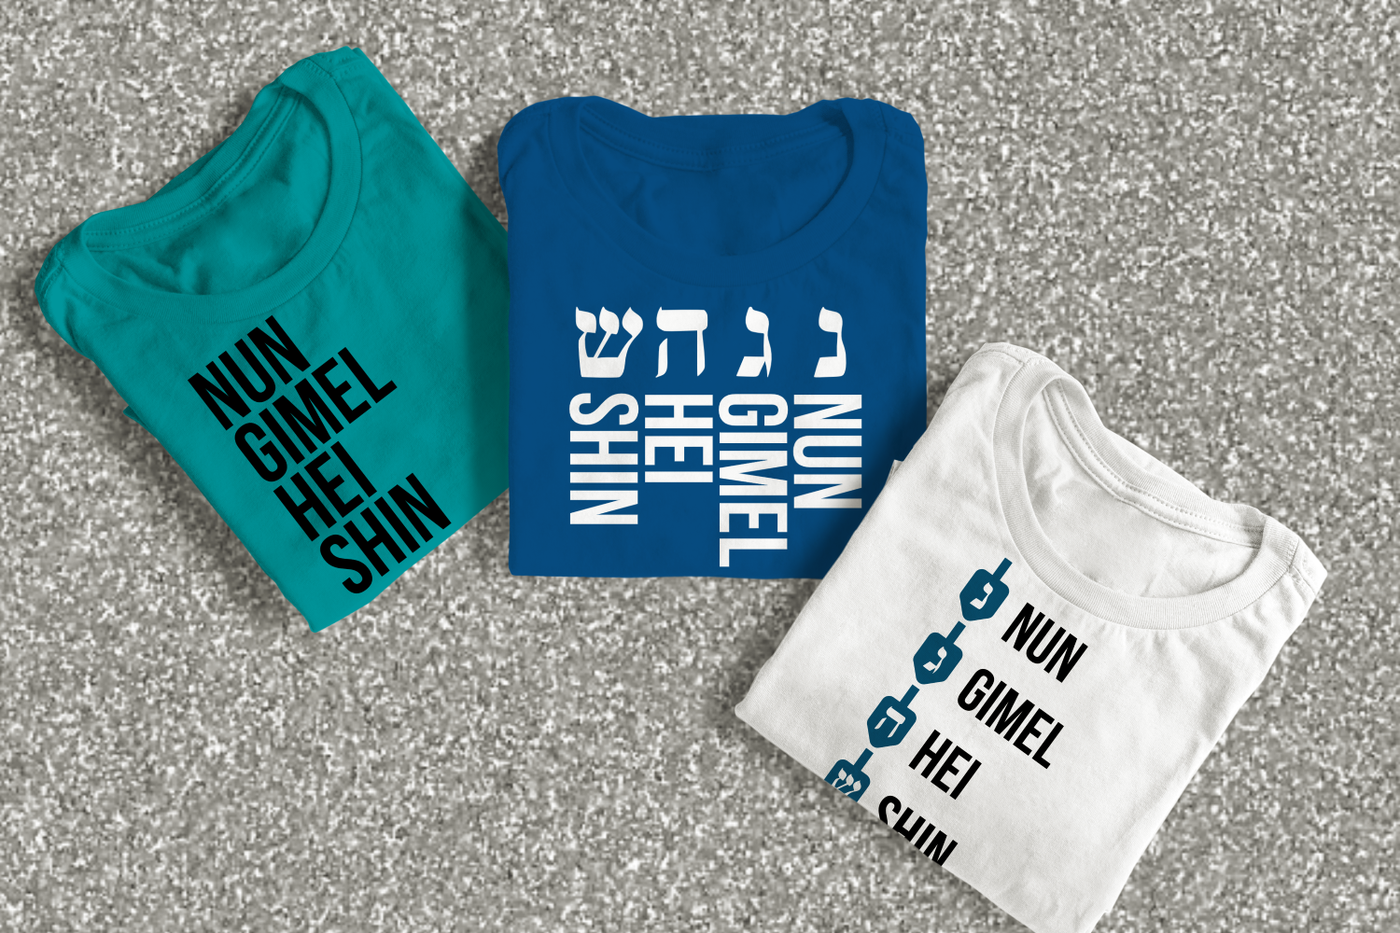 A trio of designs that say "nun gimel hei shin"